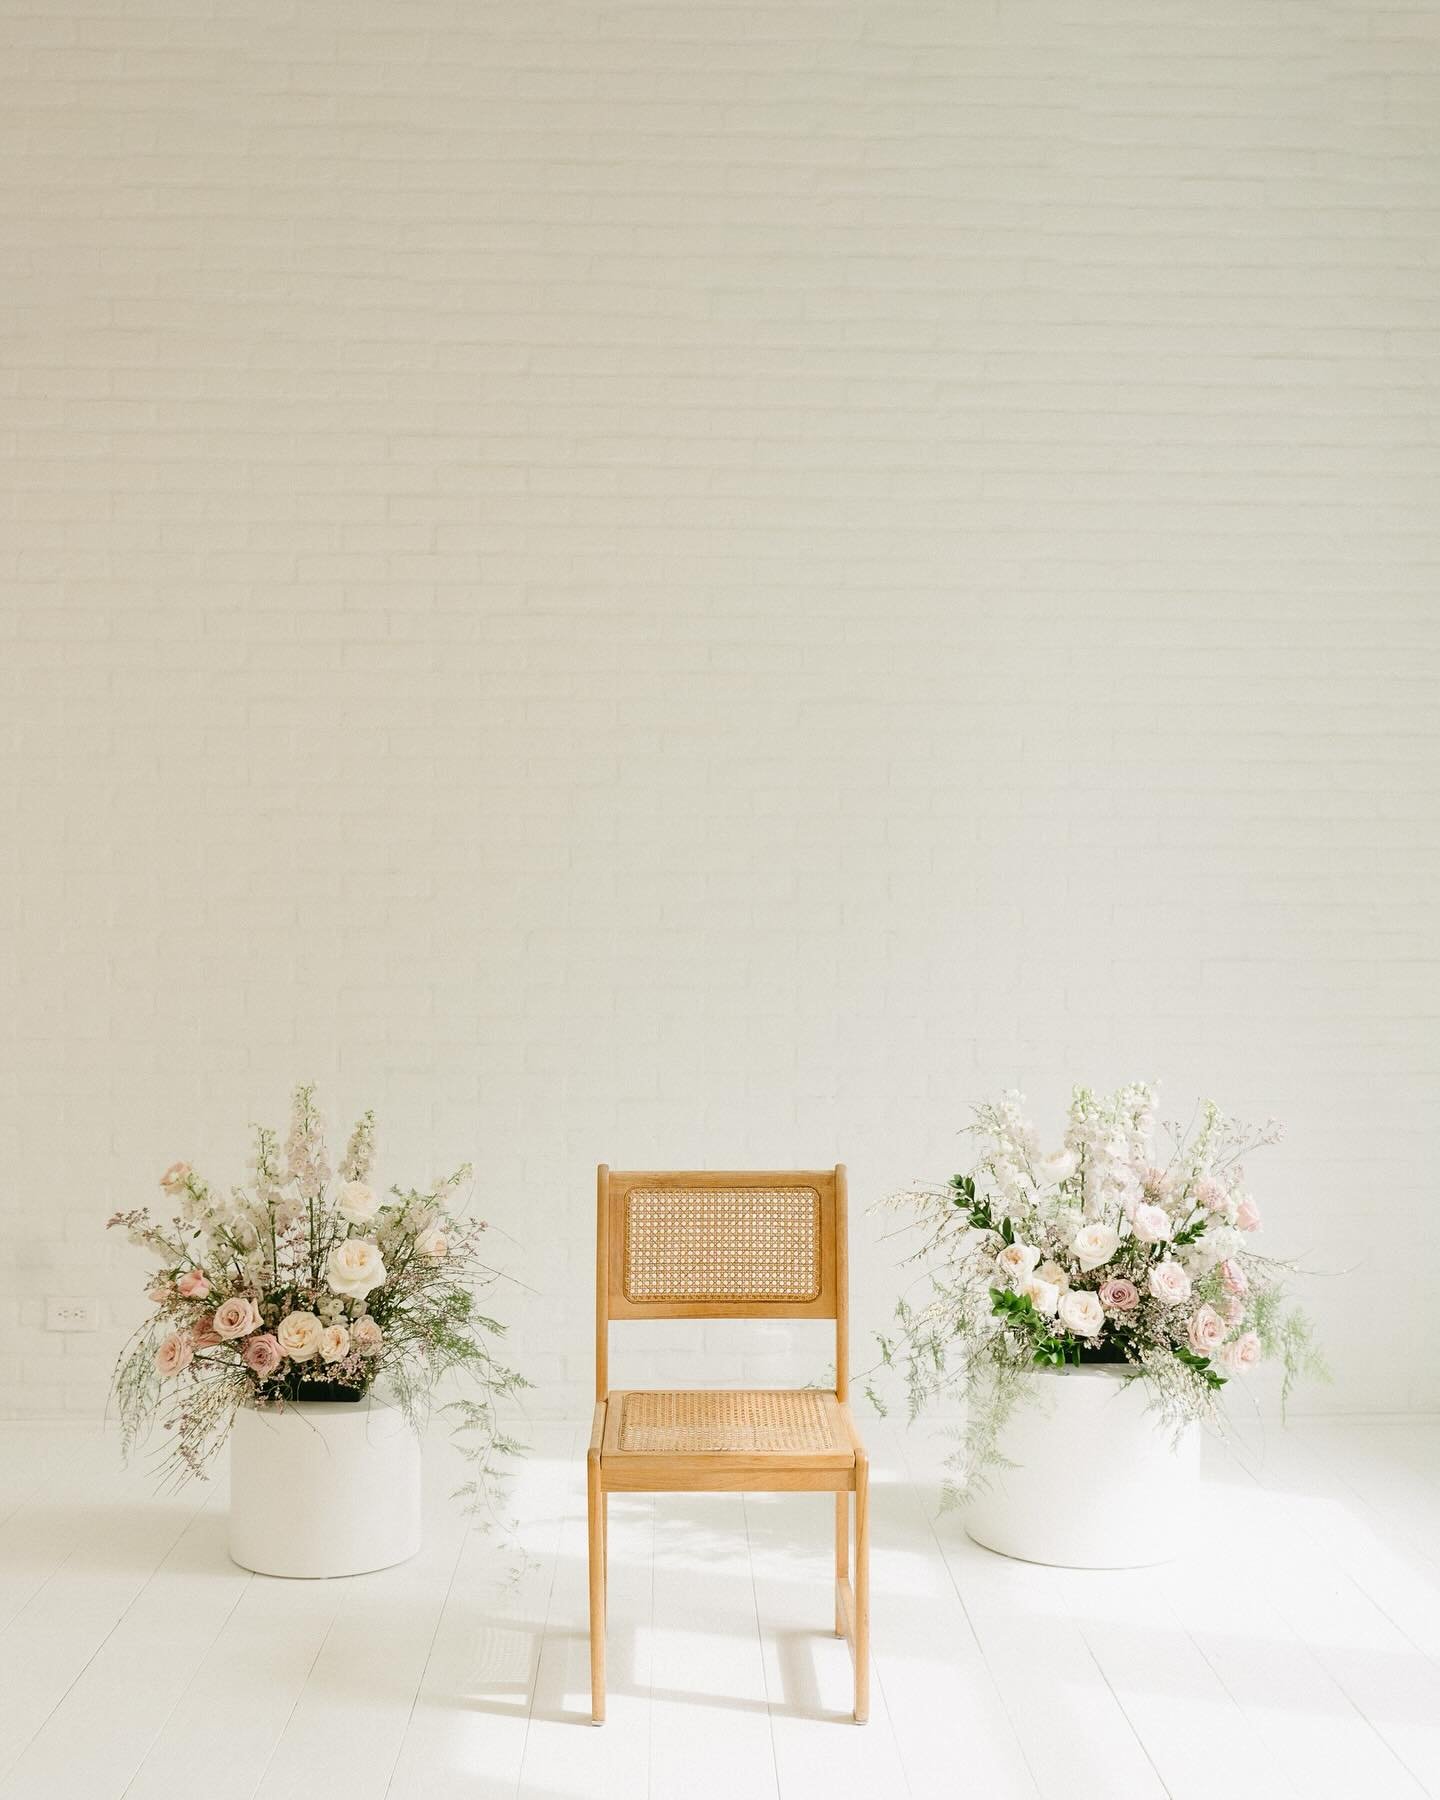 3 things we love: @saltandsandphotos 🫶🏼, @boiseurbanstudio ✨, &amp; all the lavender/mauve toned florals.💟

#florals #floraldesign #studioshoot #weddingflorist #idahoflorist #flowers #flowersofinstagram #lavender